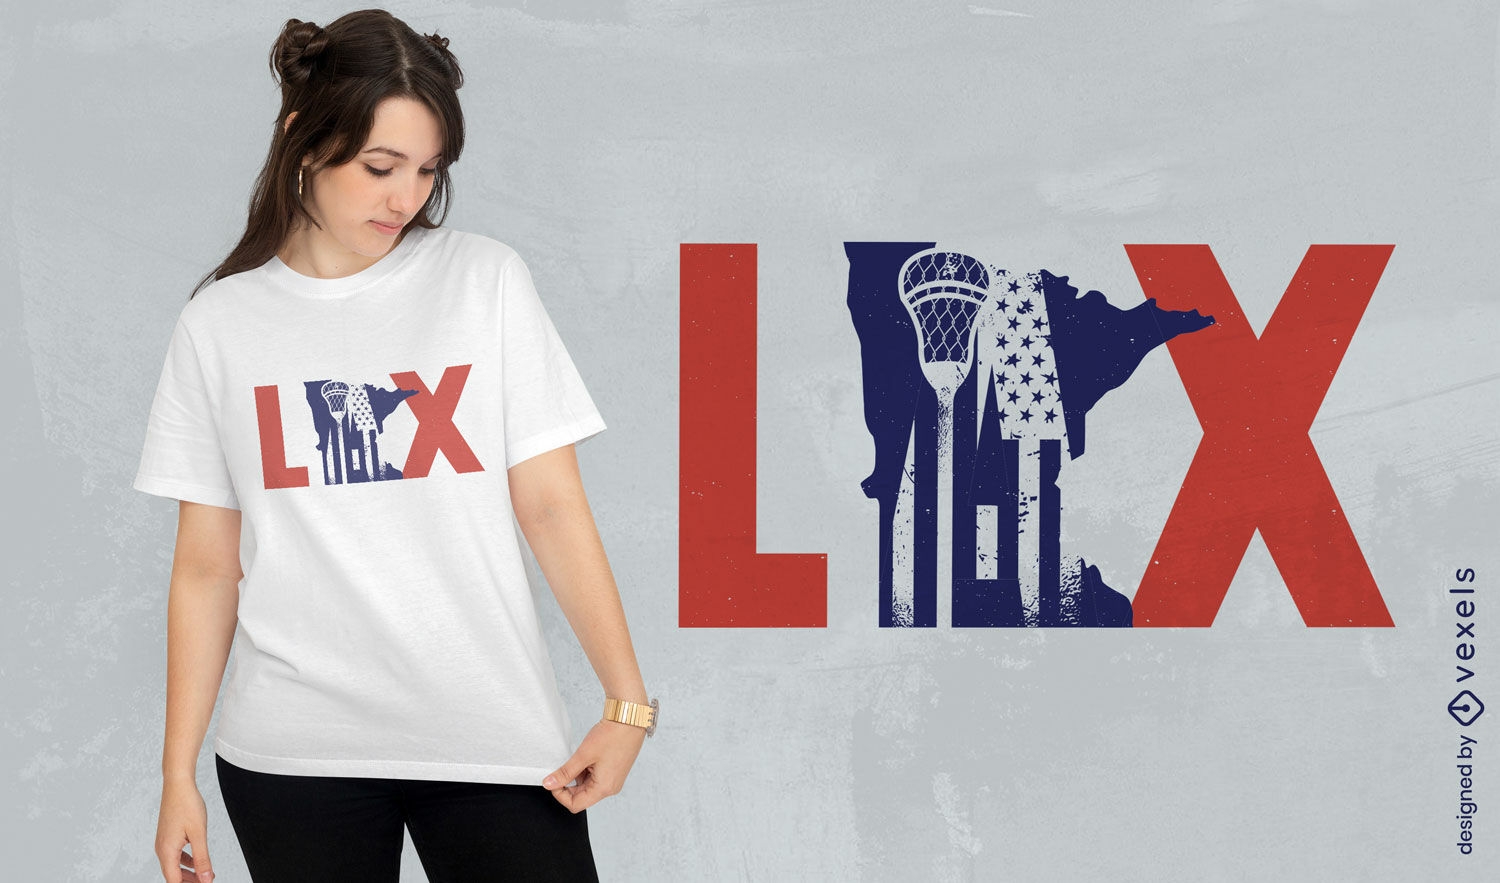 Design de camiseta com citação de esporte lacrosse